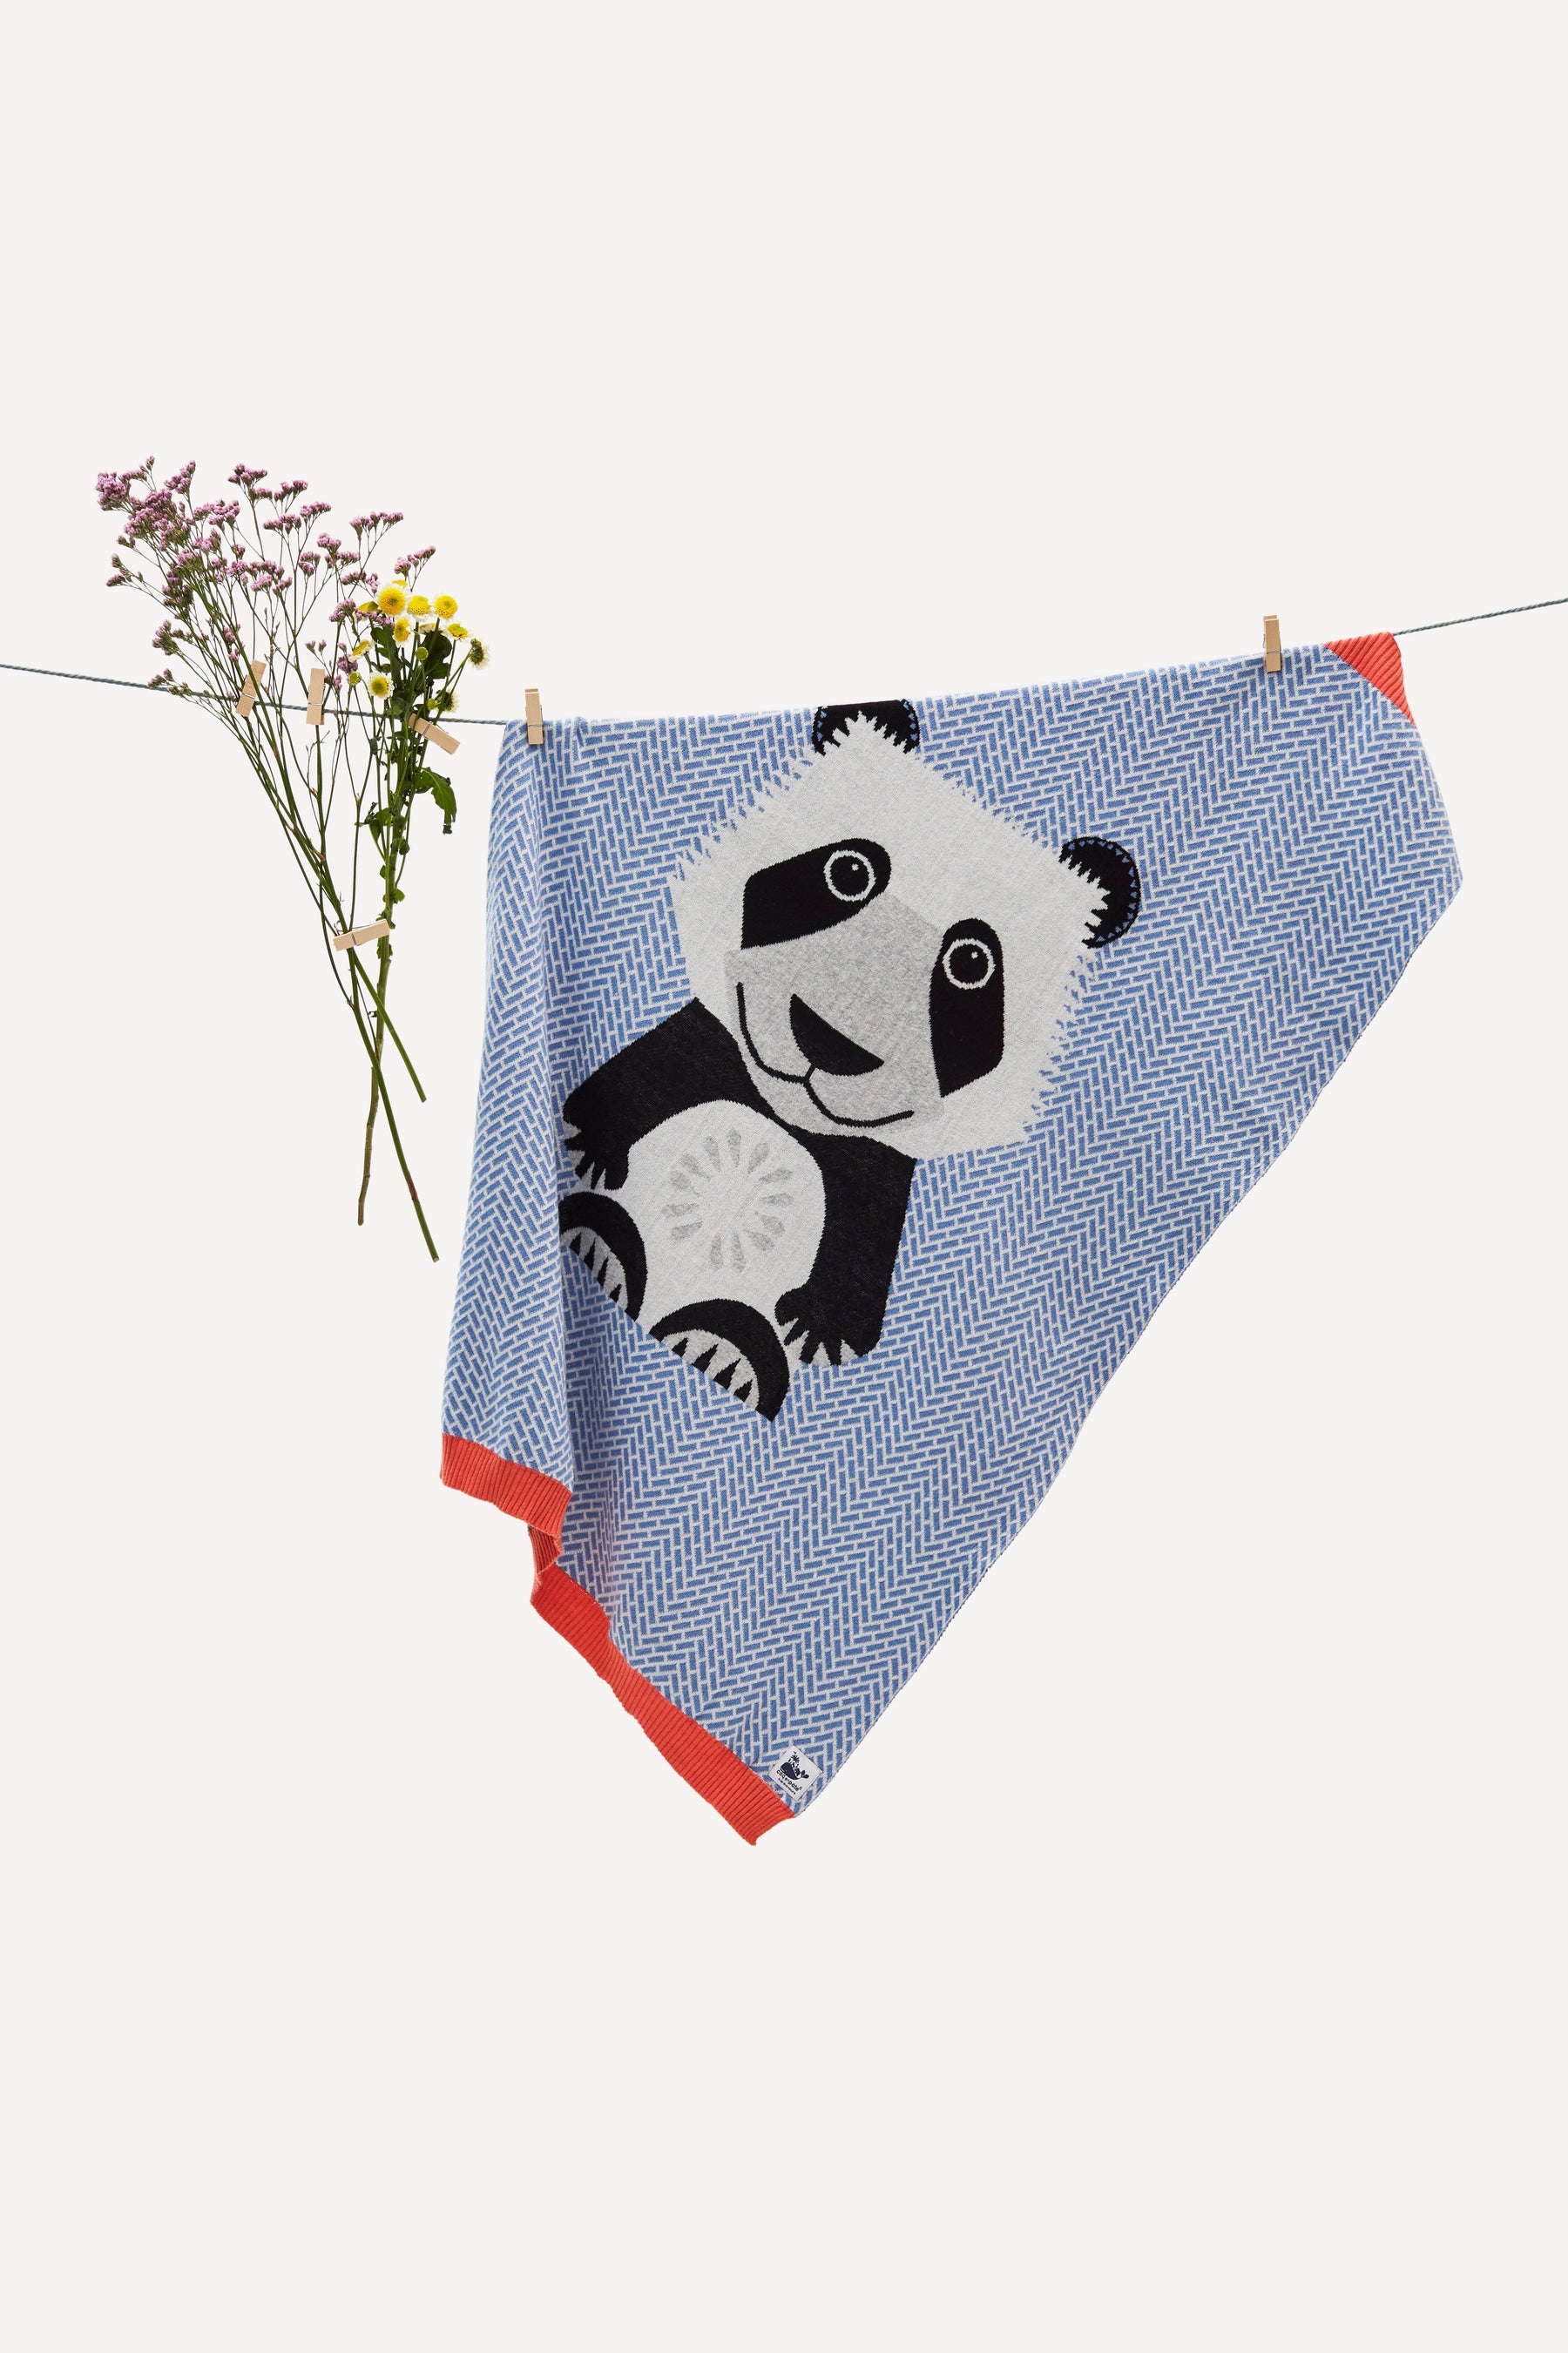 Strickdecke Panda-Motiv | Baby WWF mit